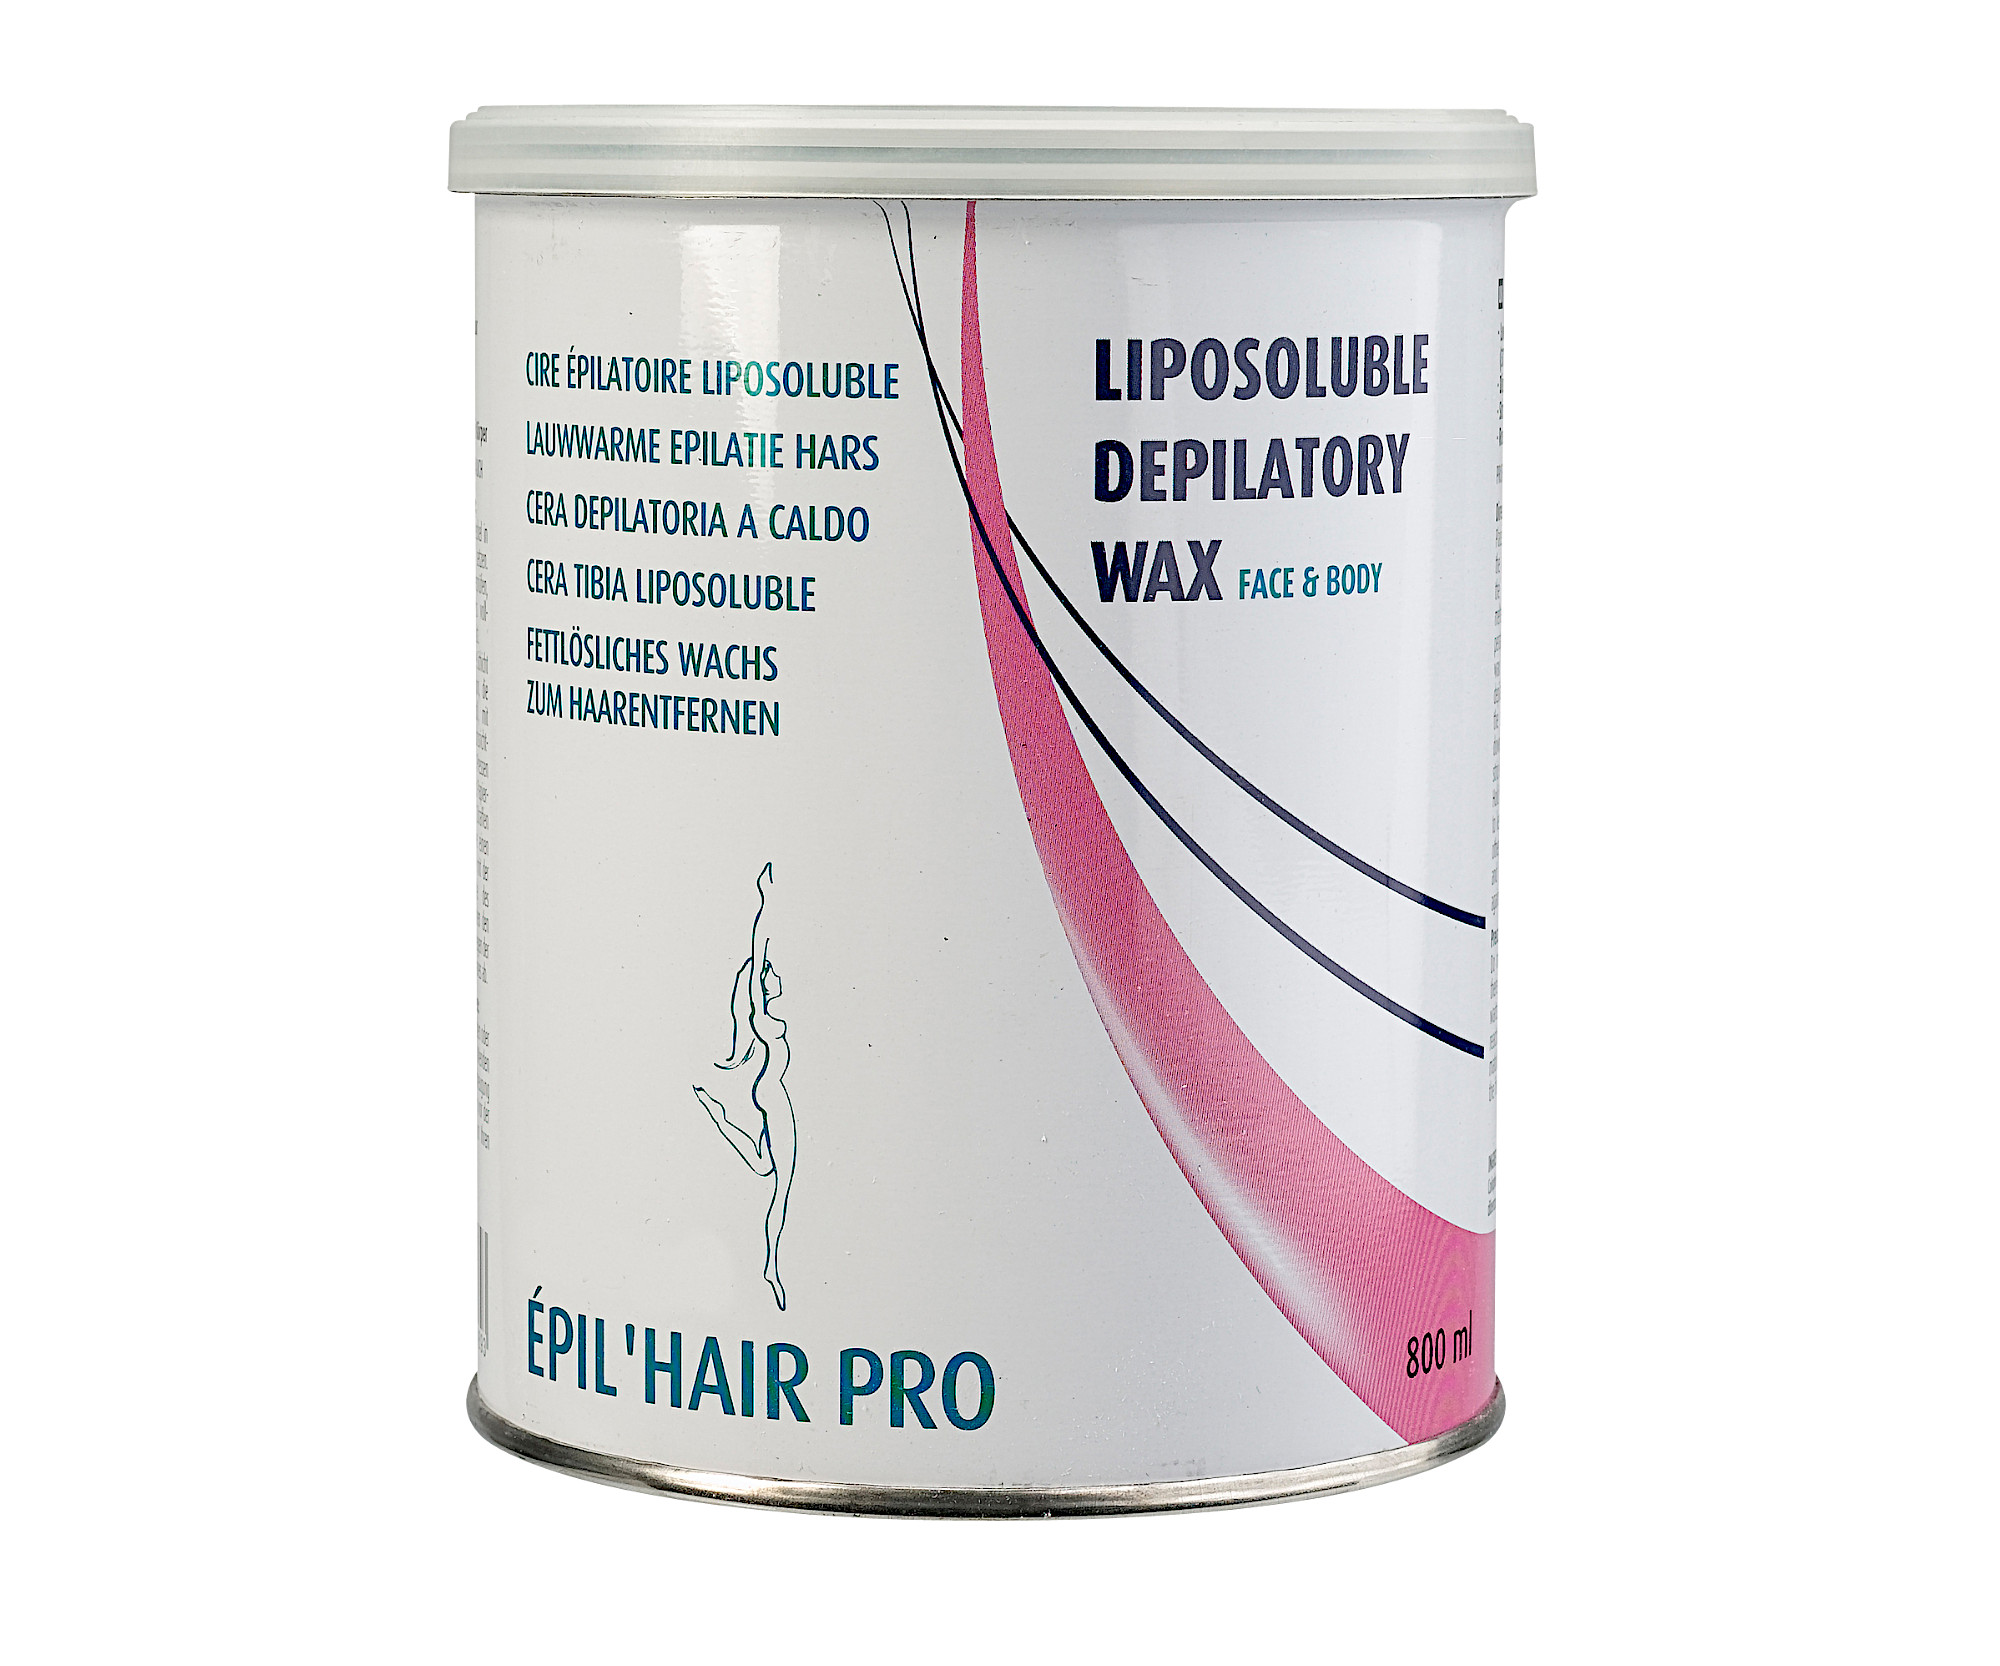 Depilační přírodní vosk Sibel Liposoluble Depilatory Wax - růžový, 800 ml (7410404) + DÁREK ZDARMA